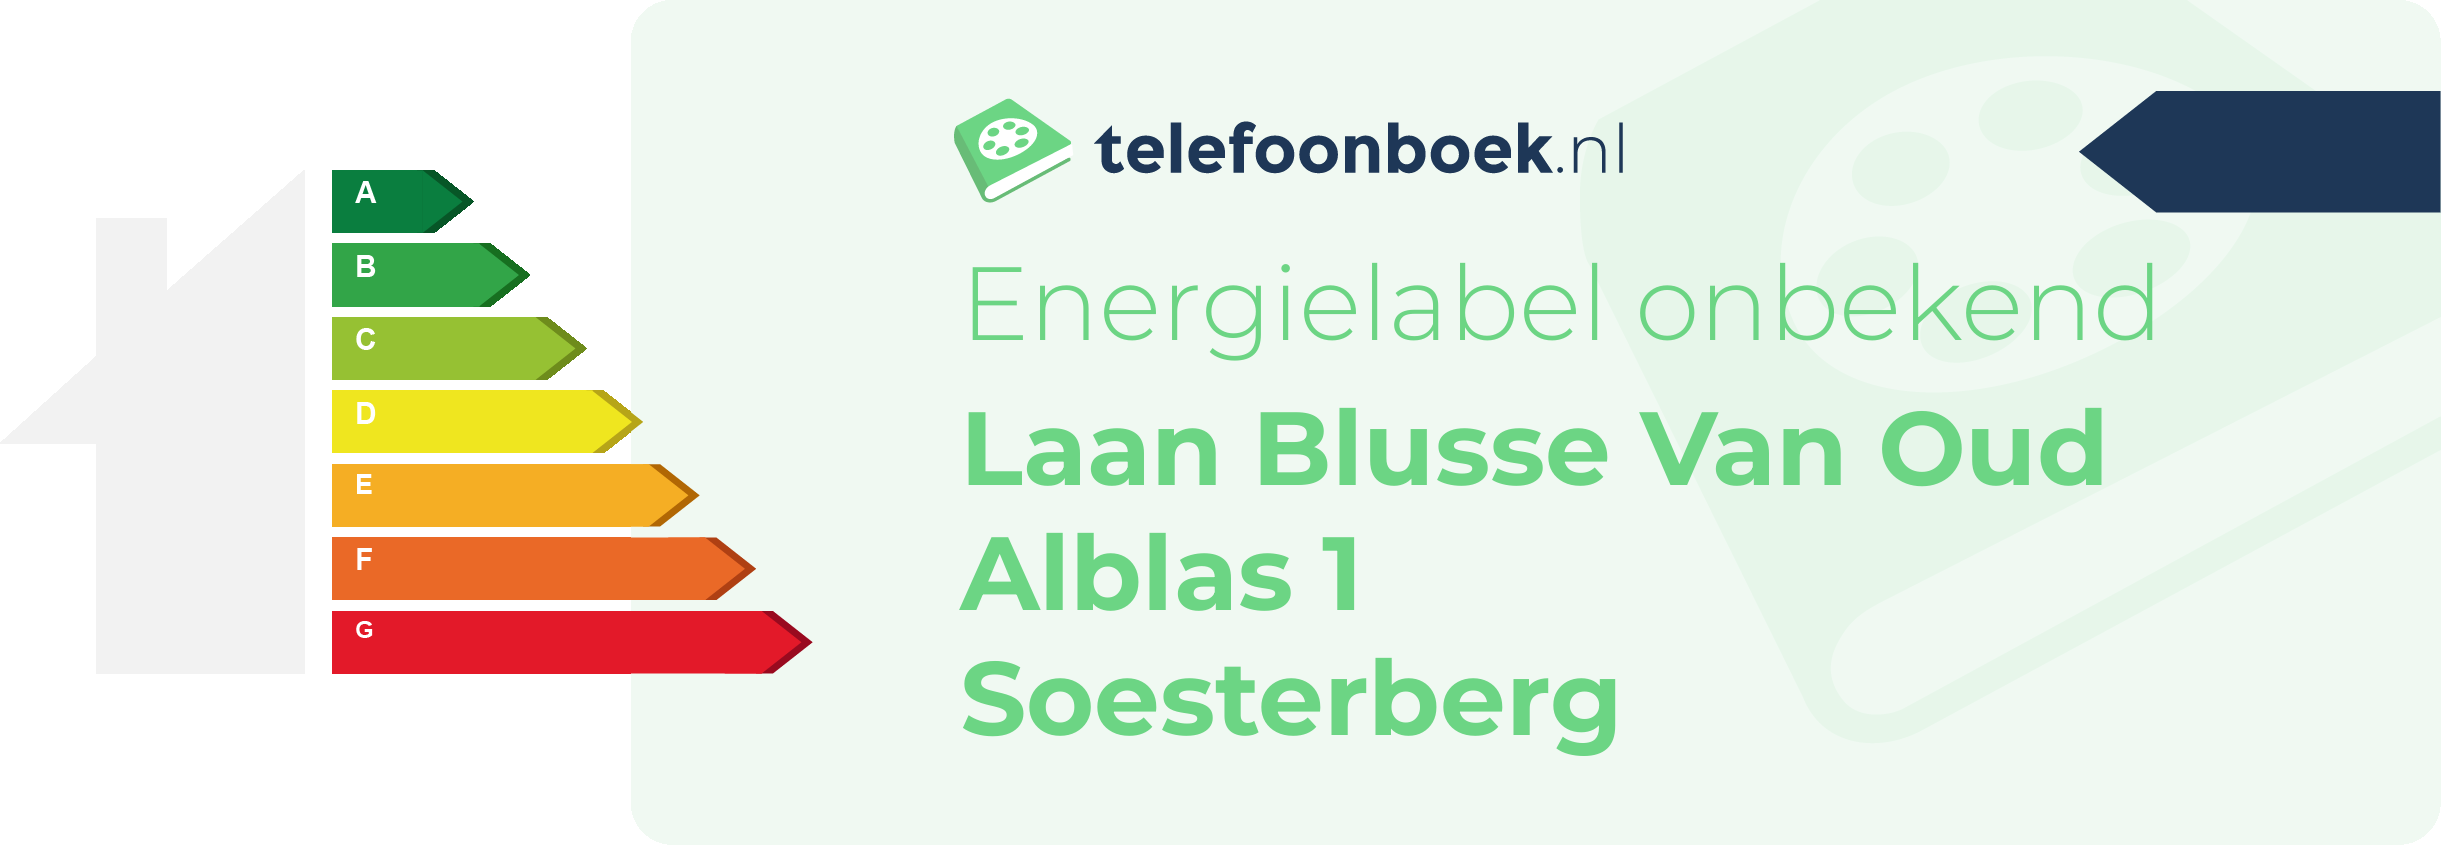 Energielabel Laan Blusse Van Oud Alblas 1 Soesterberg